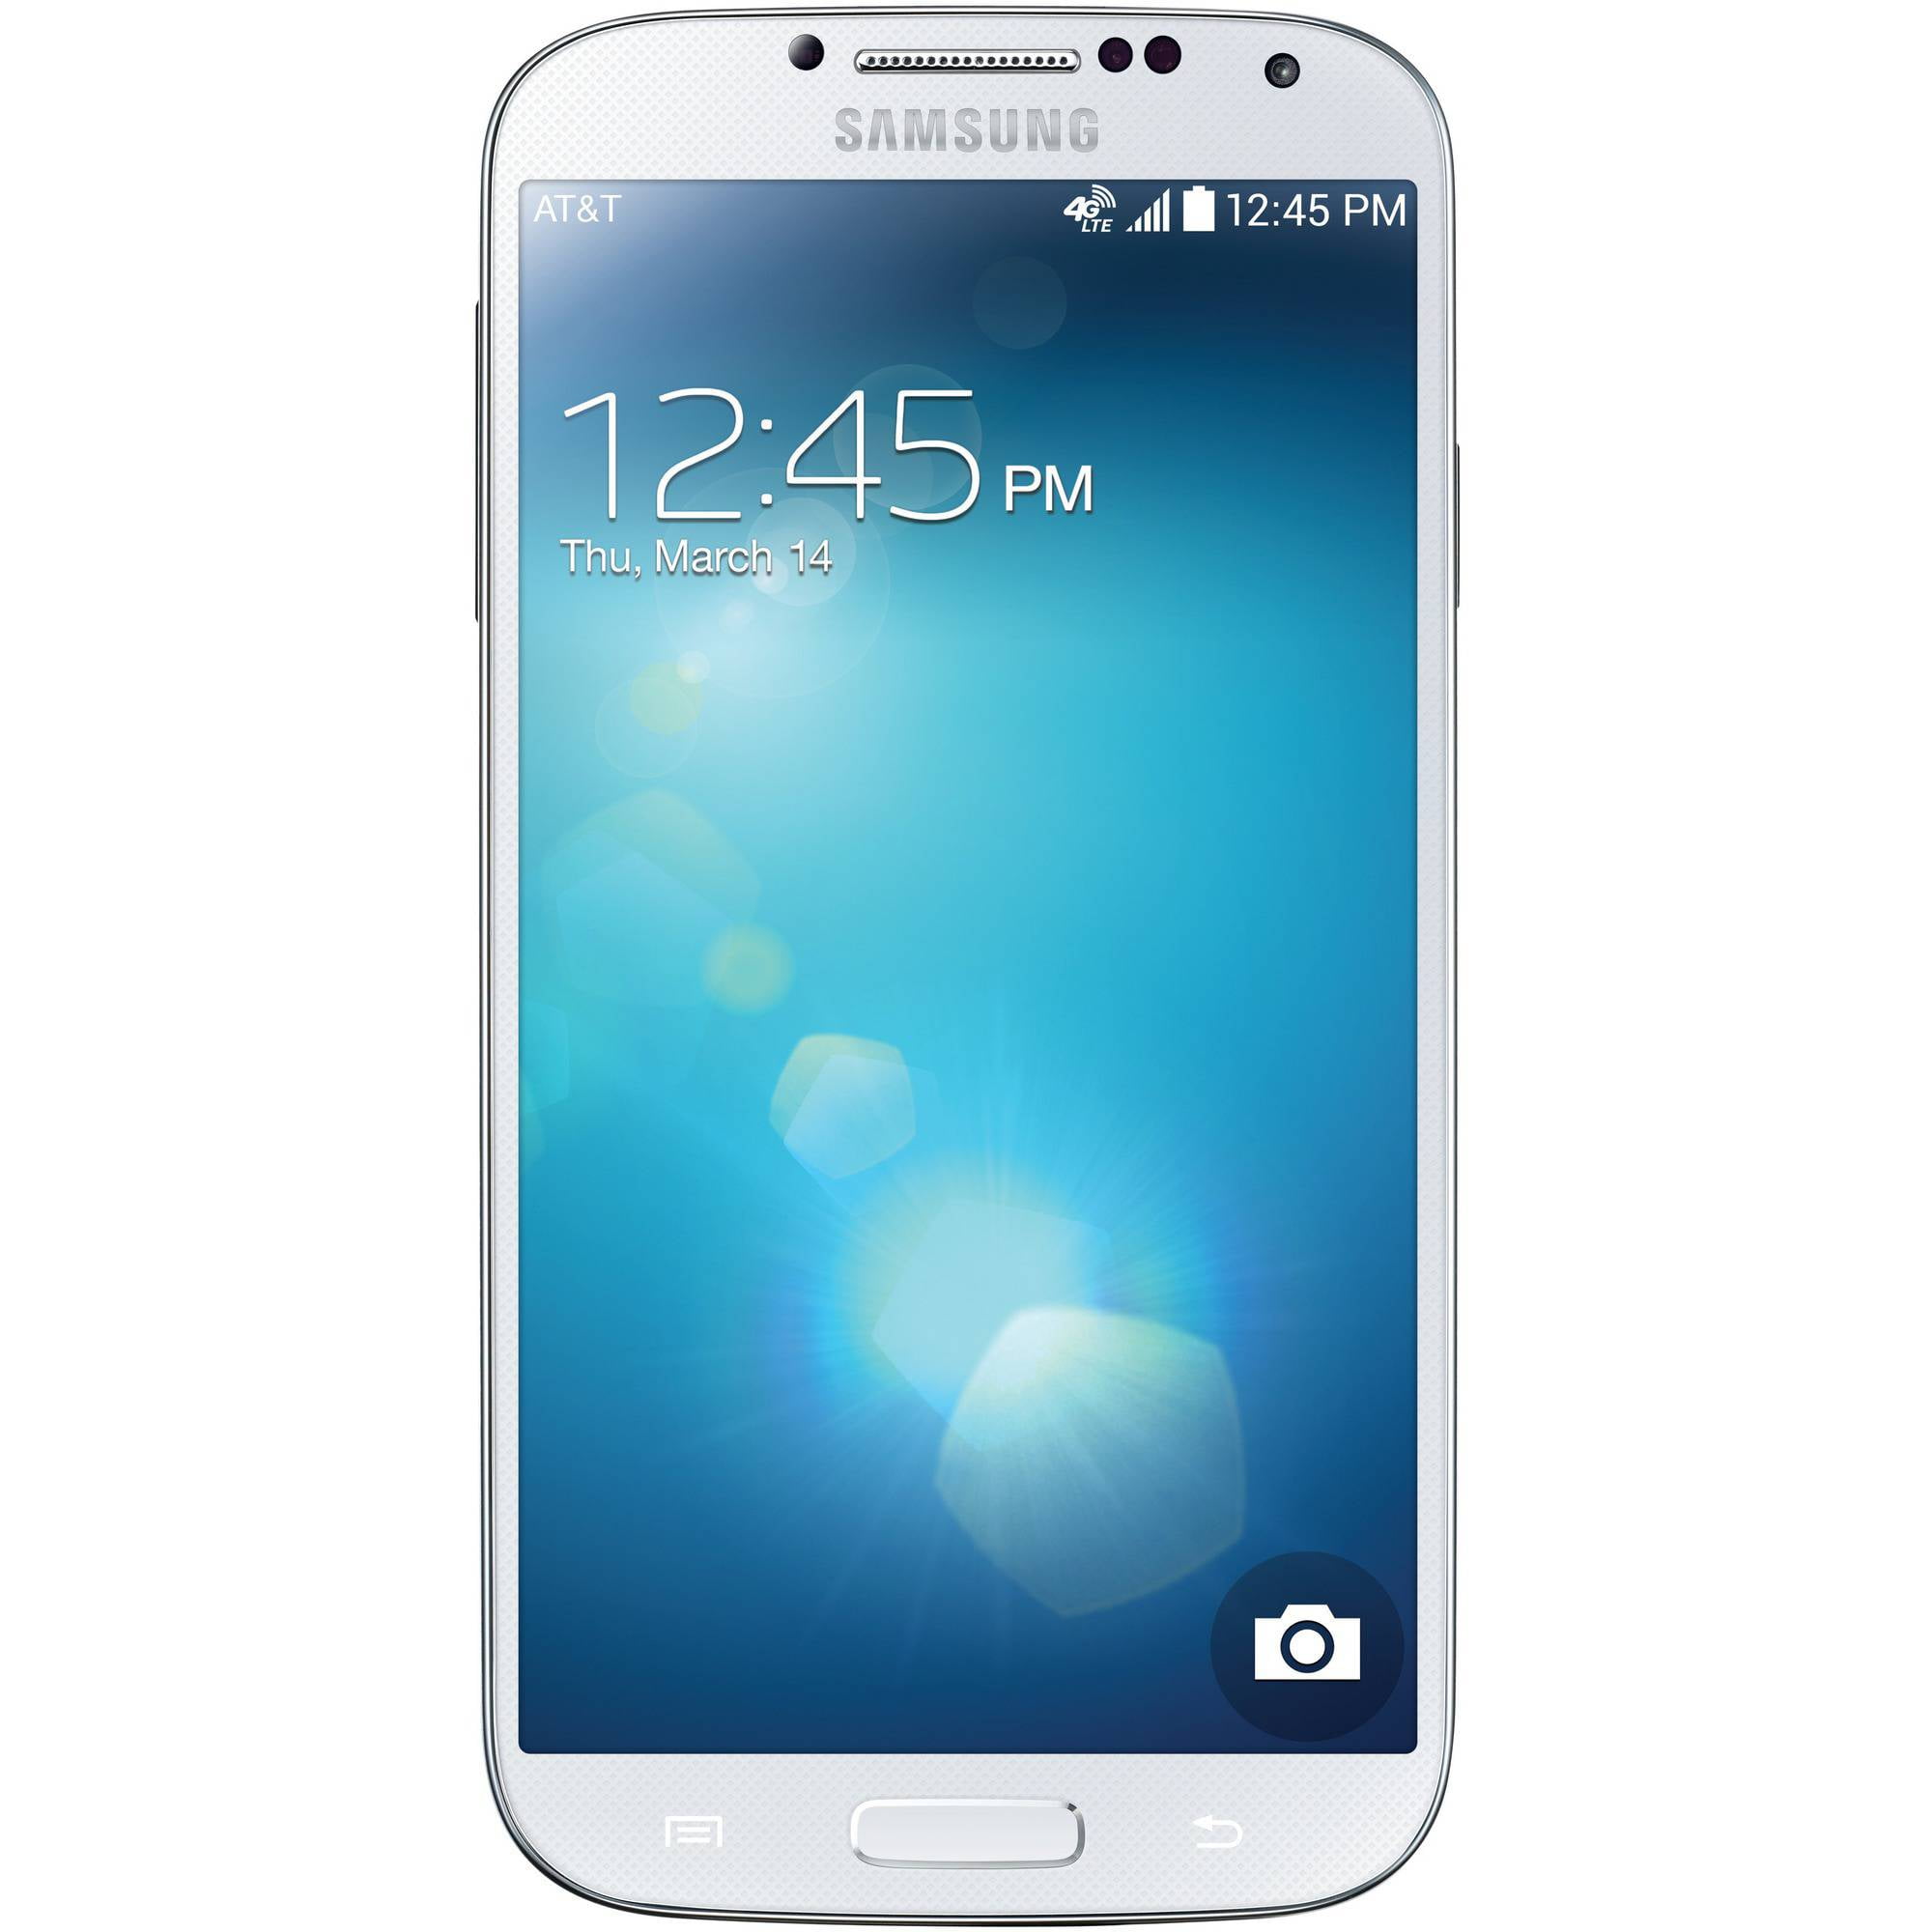 afgewerkt Belachelijk Zending Samsung Galaxy S4 White Certified Pre-Owned (AT&T) - Walmart.com